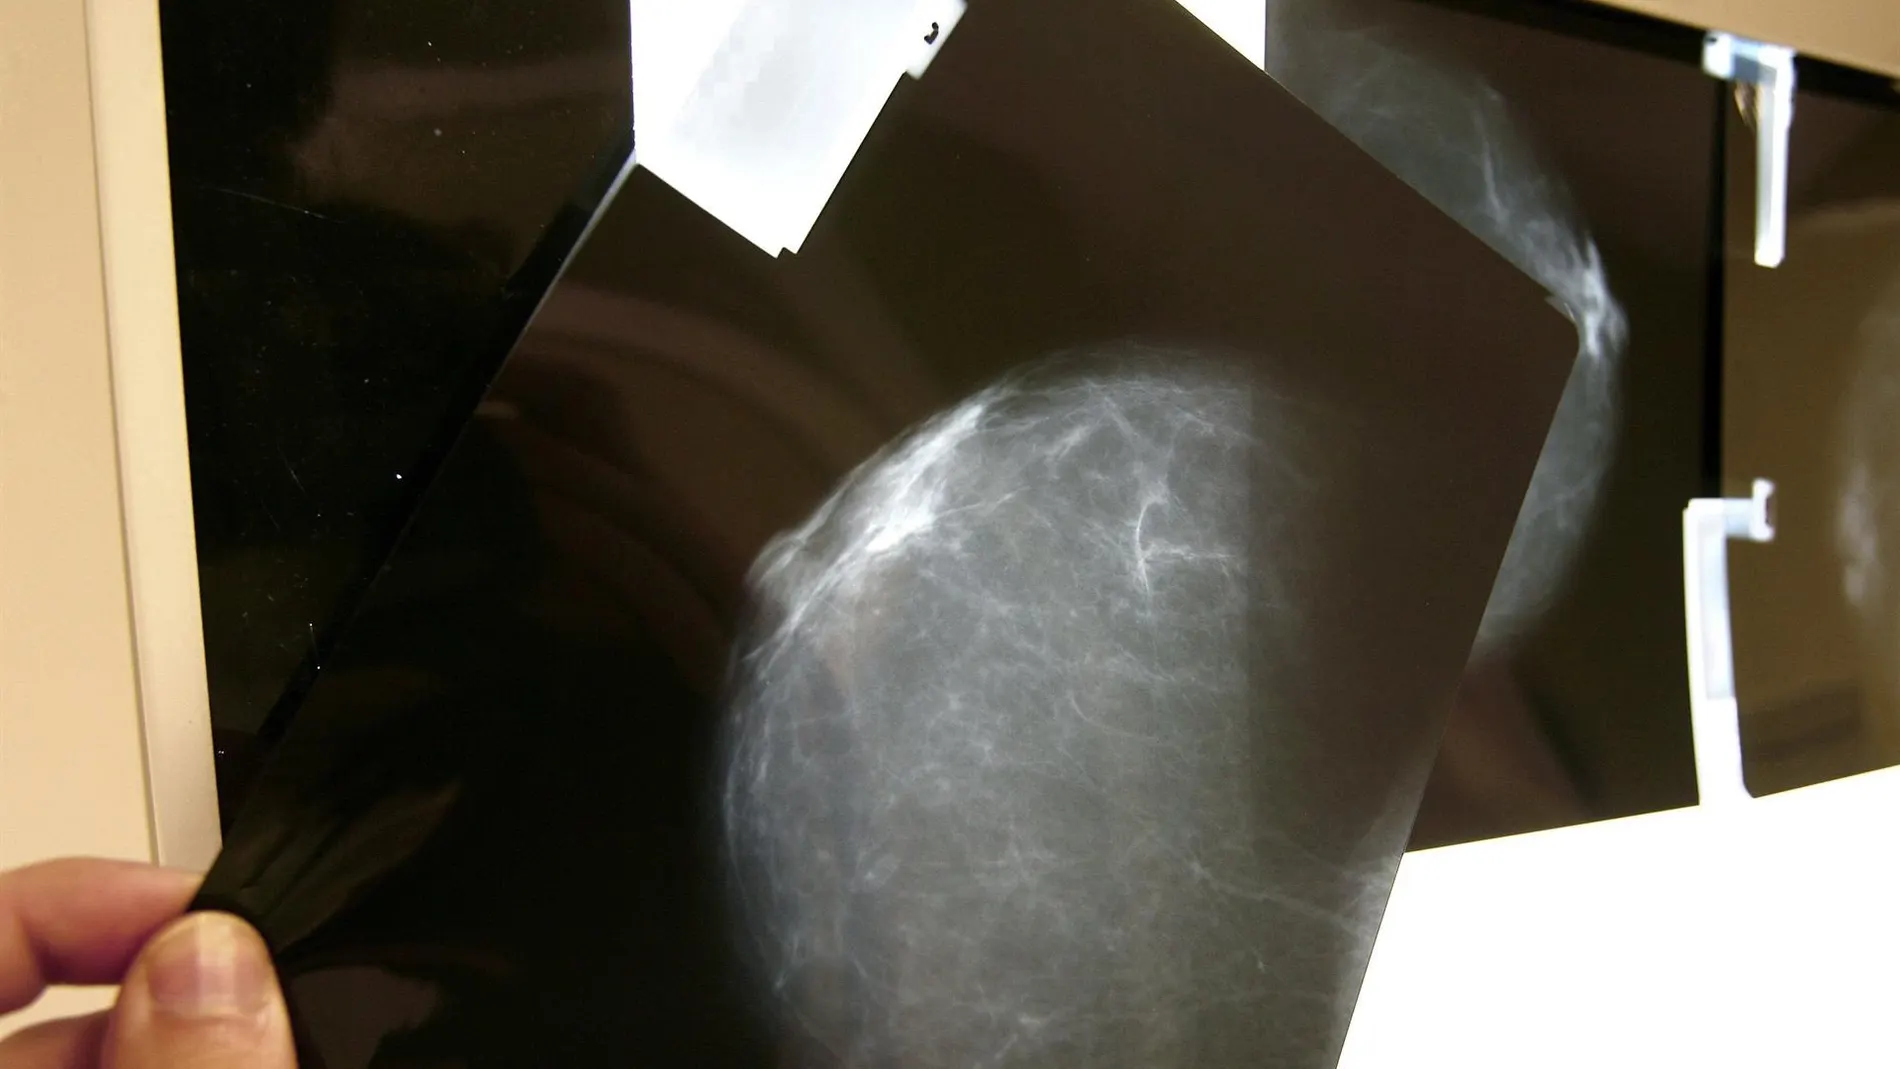 Omomyc podría frenar la metástasis en el cáncer de mama